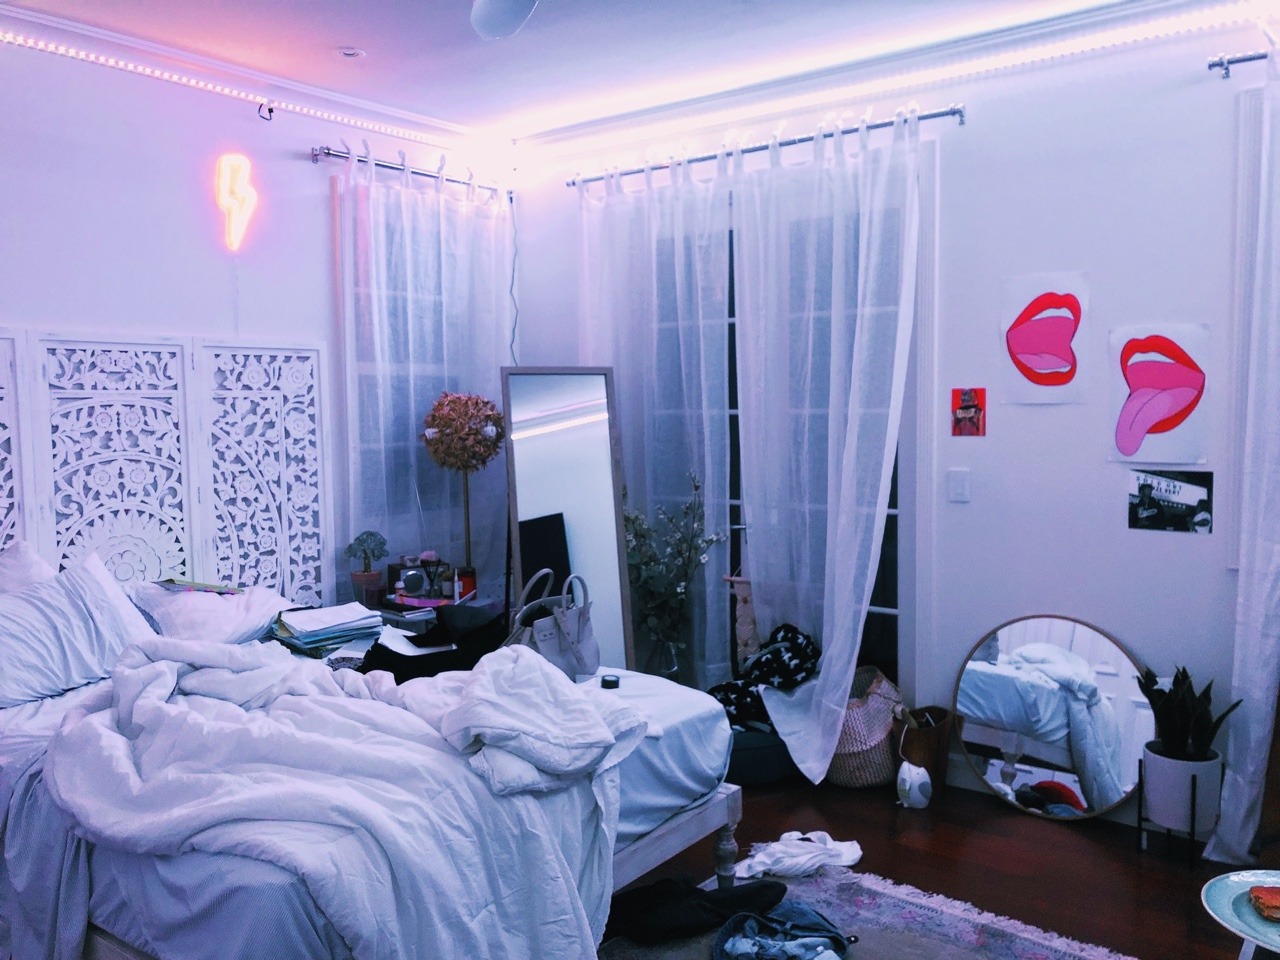 DAANIS: Messy Bedroom Tumblr